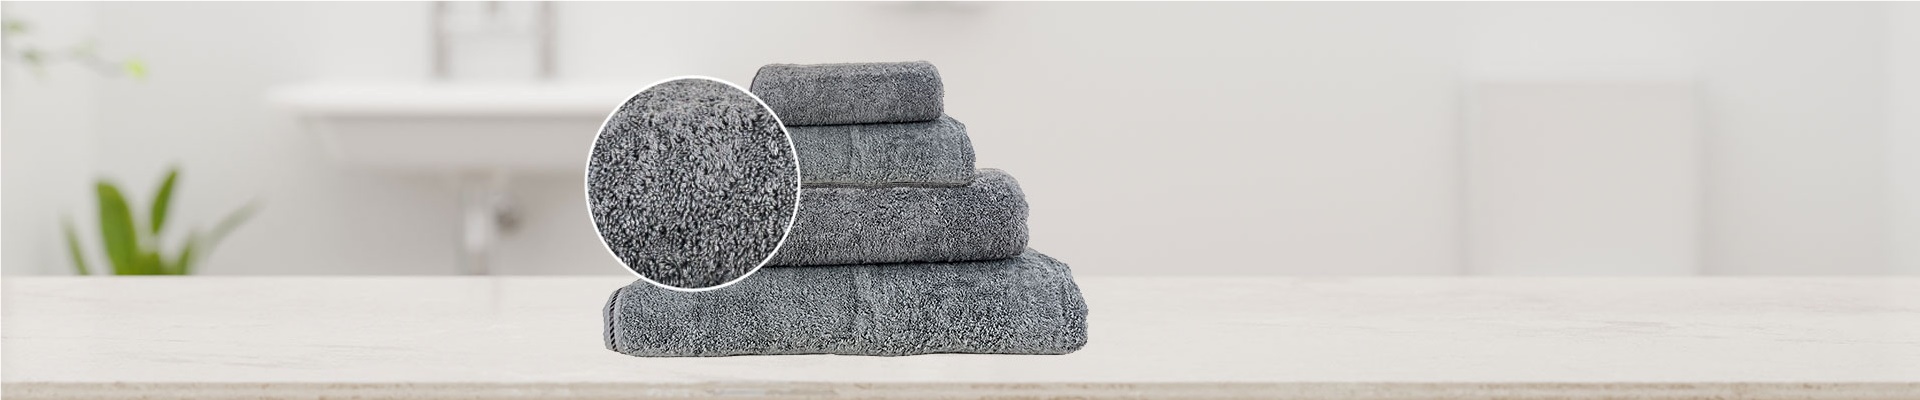 Aangenaam zachte handdoeken van badstof in verschillende maten en kleuren